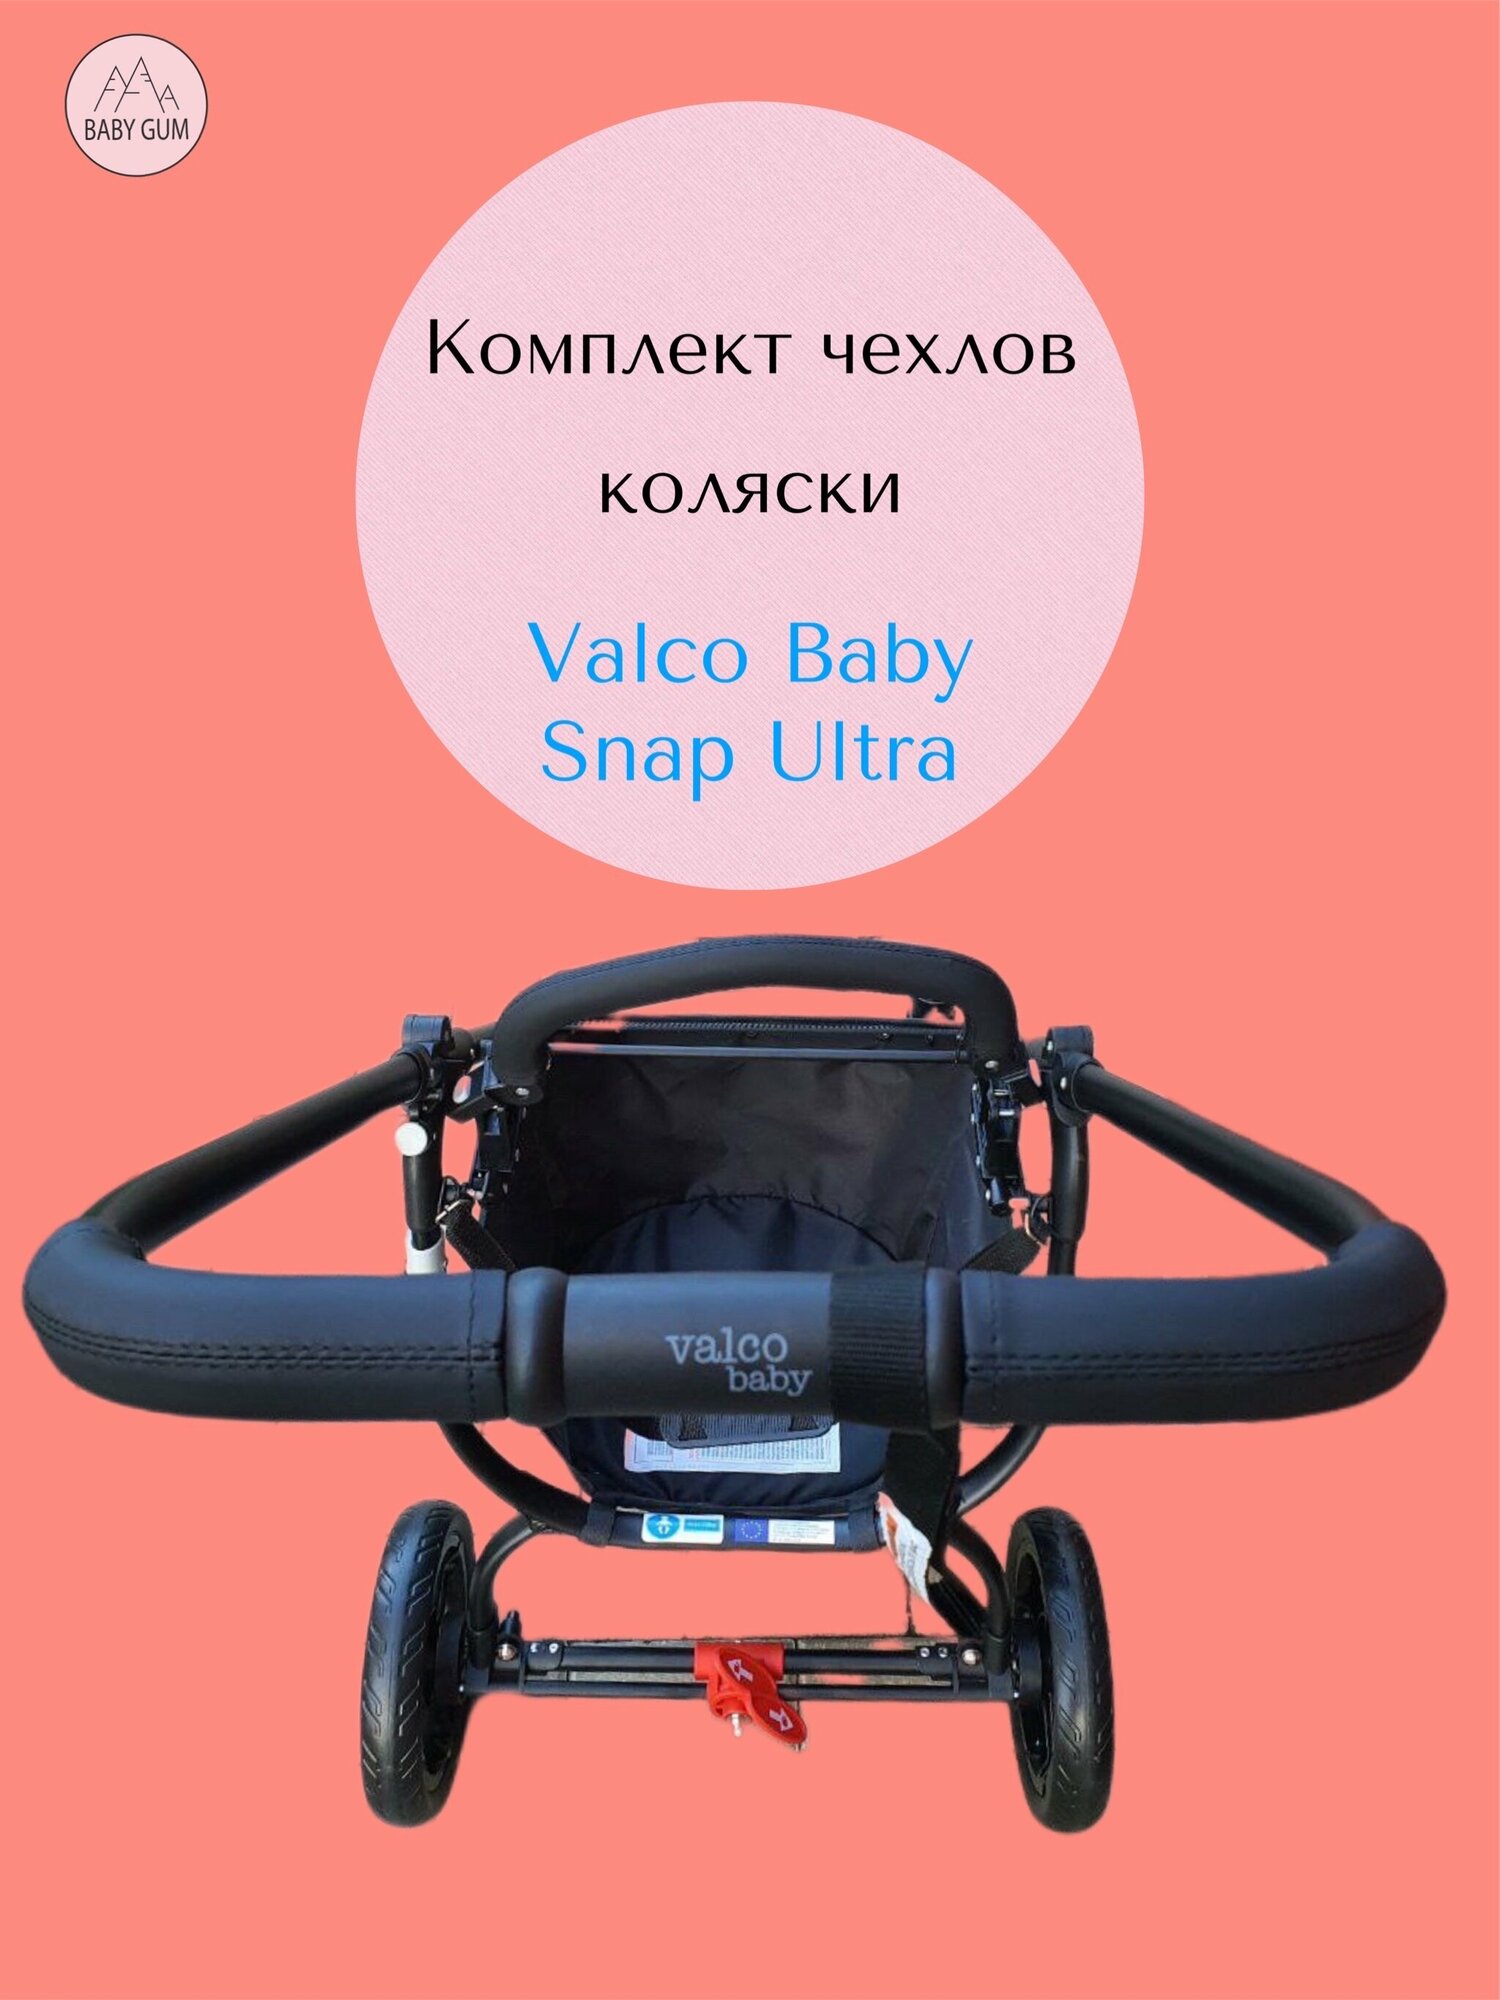 Комплект чехлы на ручку и бампер коляски Valco Baby Snap Ultra